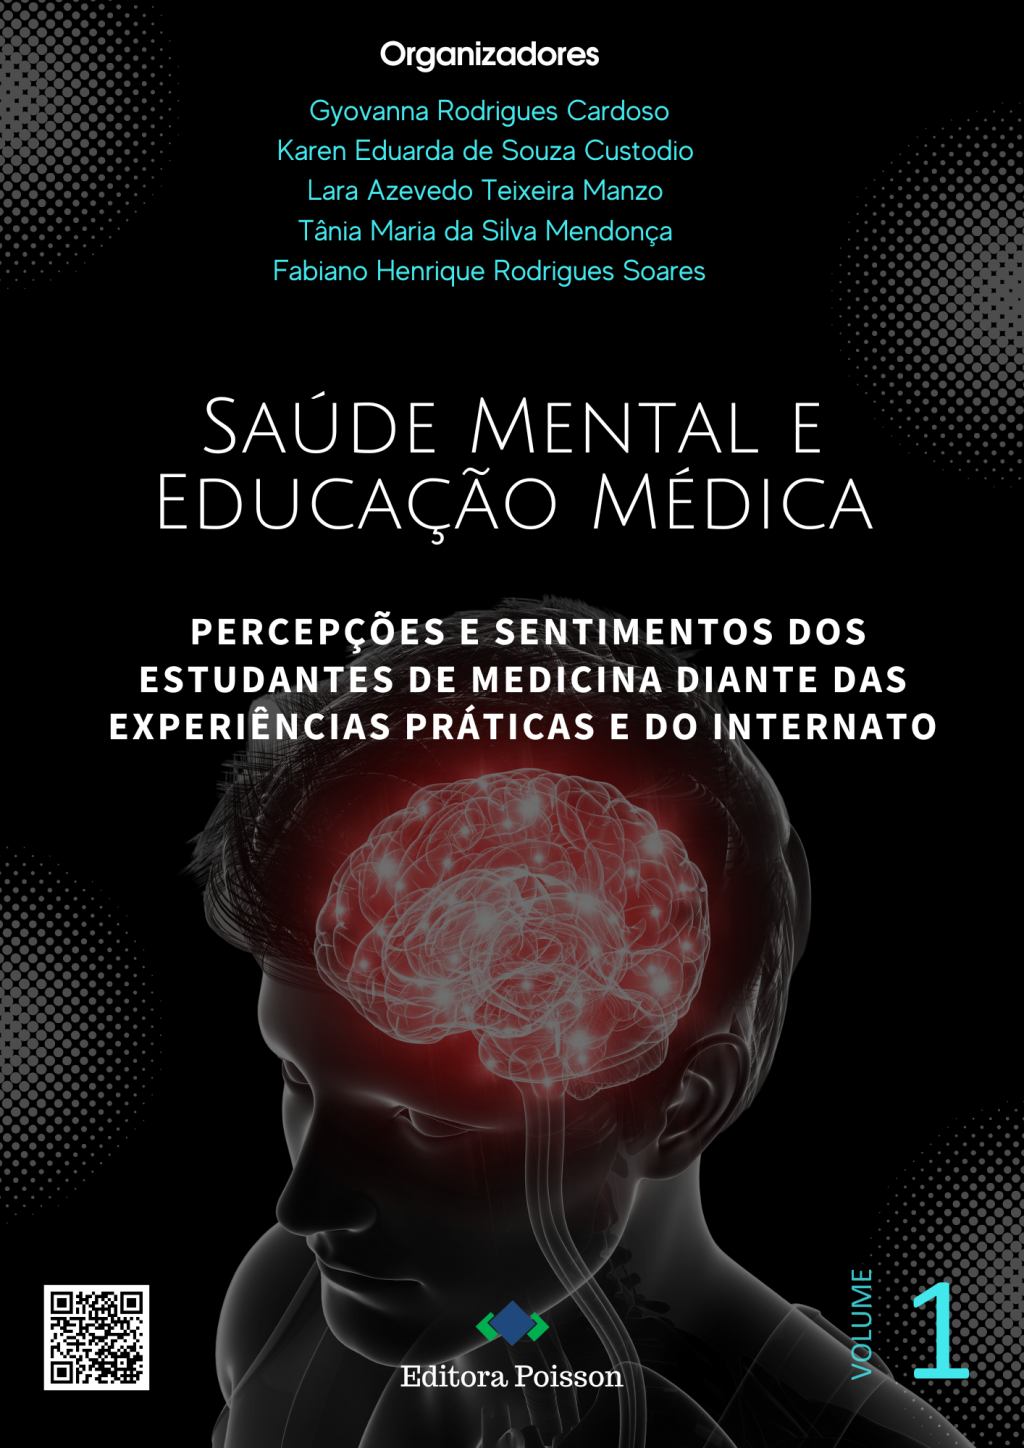 Saúde Mental e Educação Médica: Percepções e sentimentos dos estudantes de medicina diante das experiências práticas e do internato